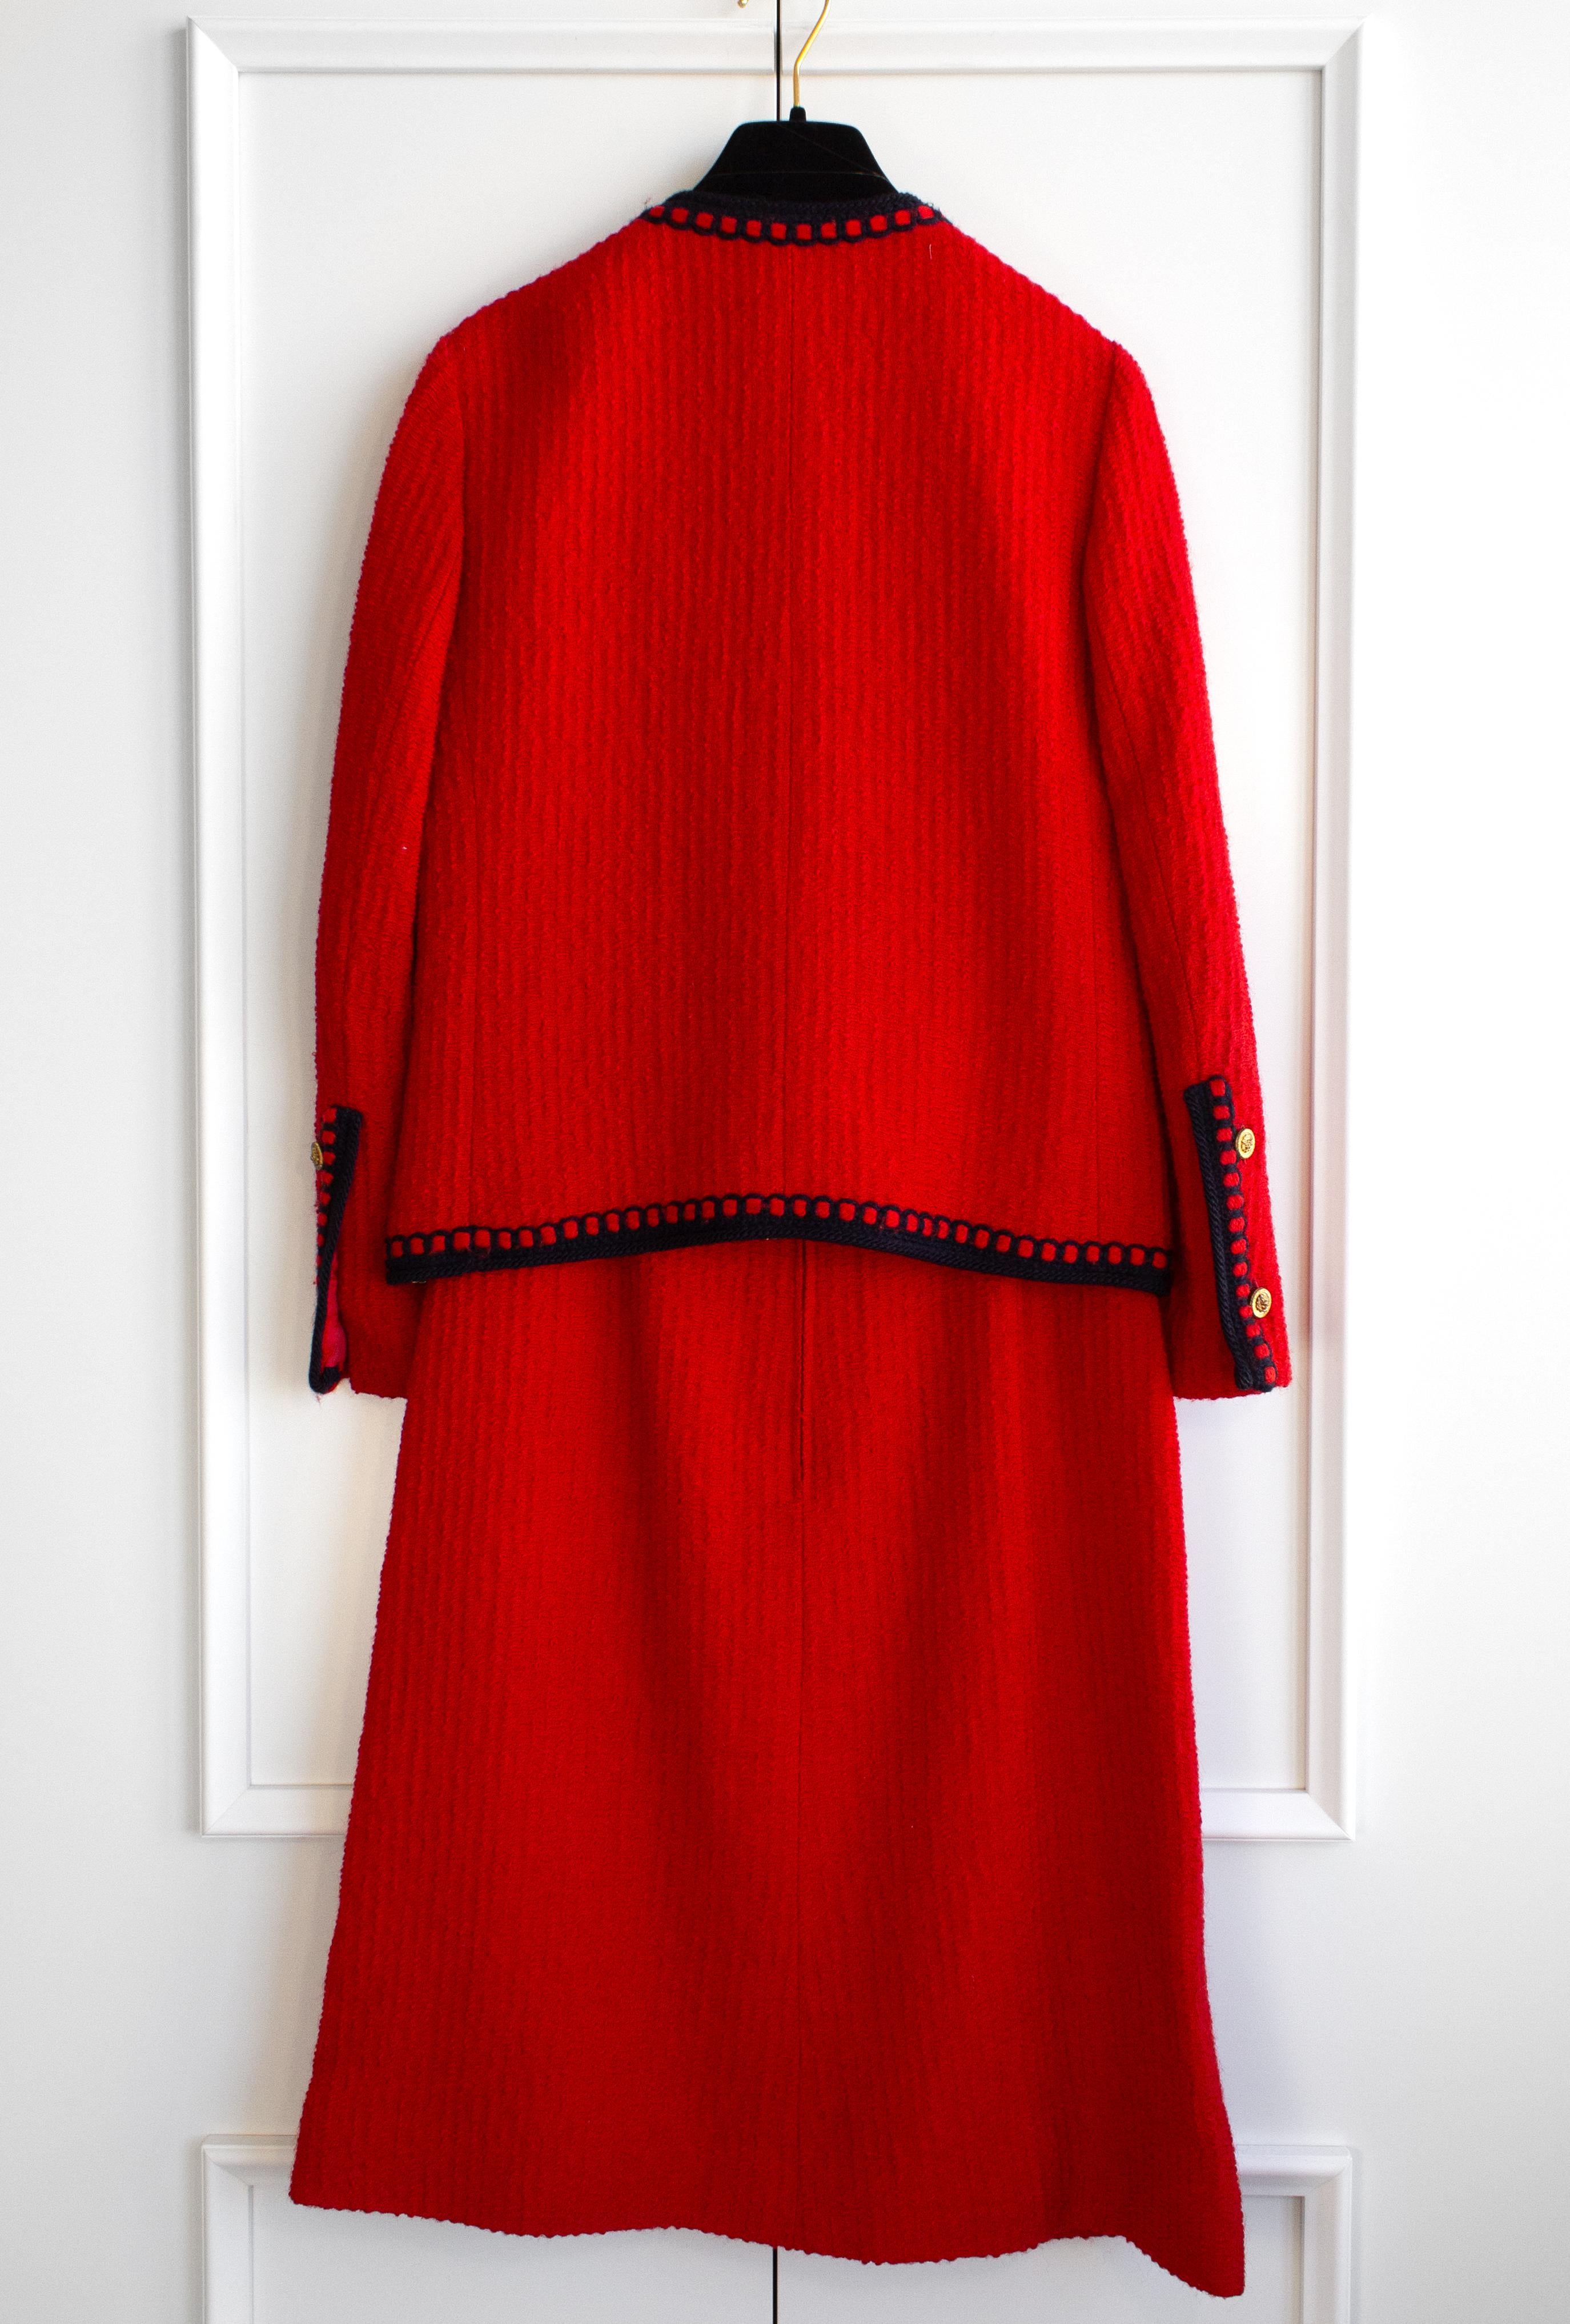 Chanel Vintage 1981 Parisian Red Gold Lion Tweed Jacket Skirt Suit Pour femmes en vente